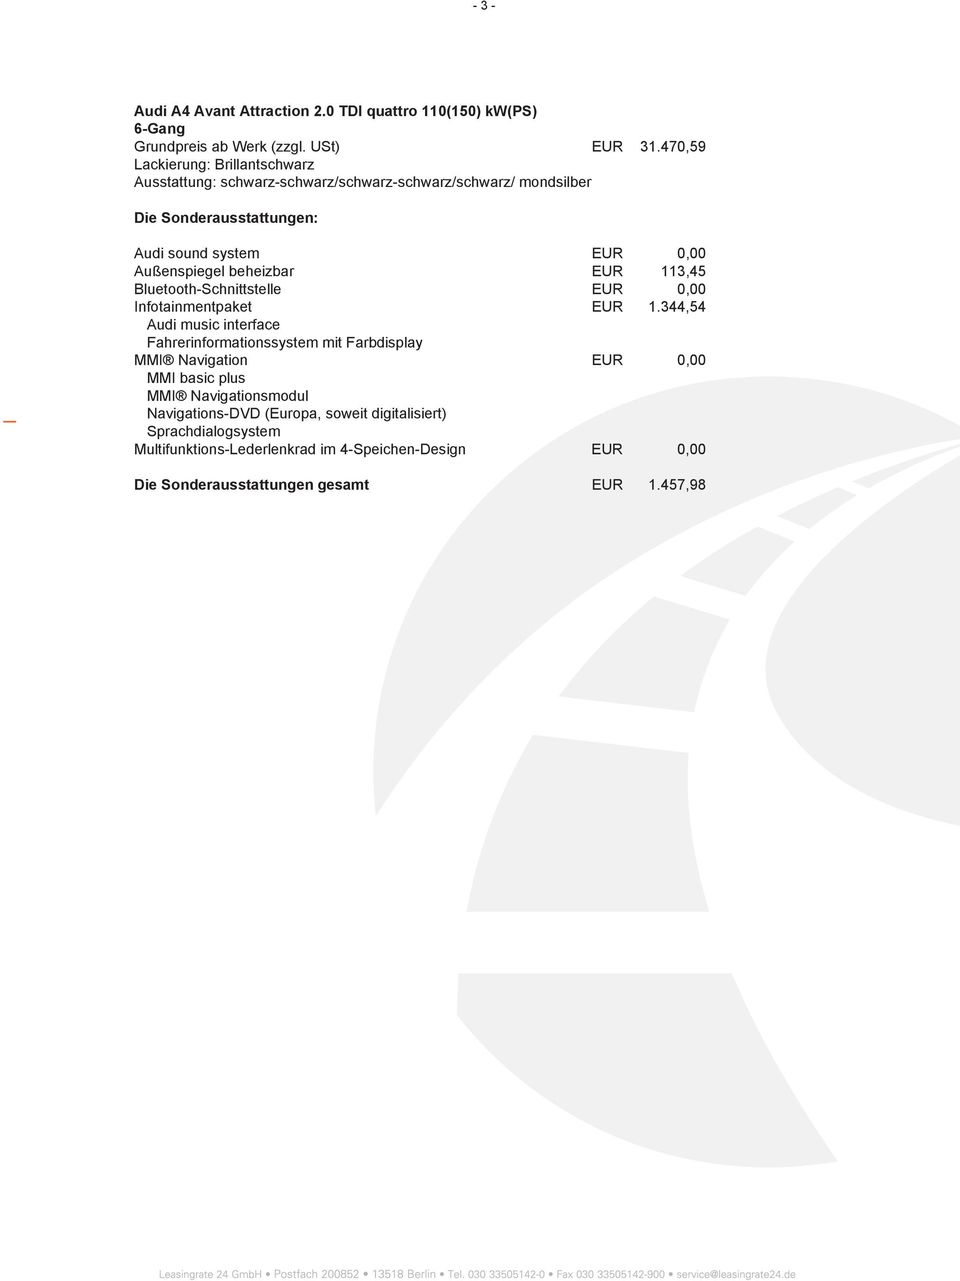 0,00 Infotainmentpaket EUR 1.